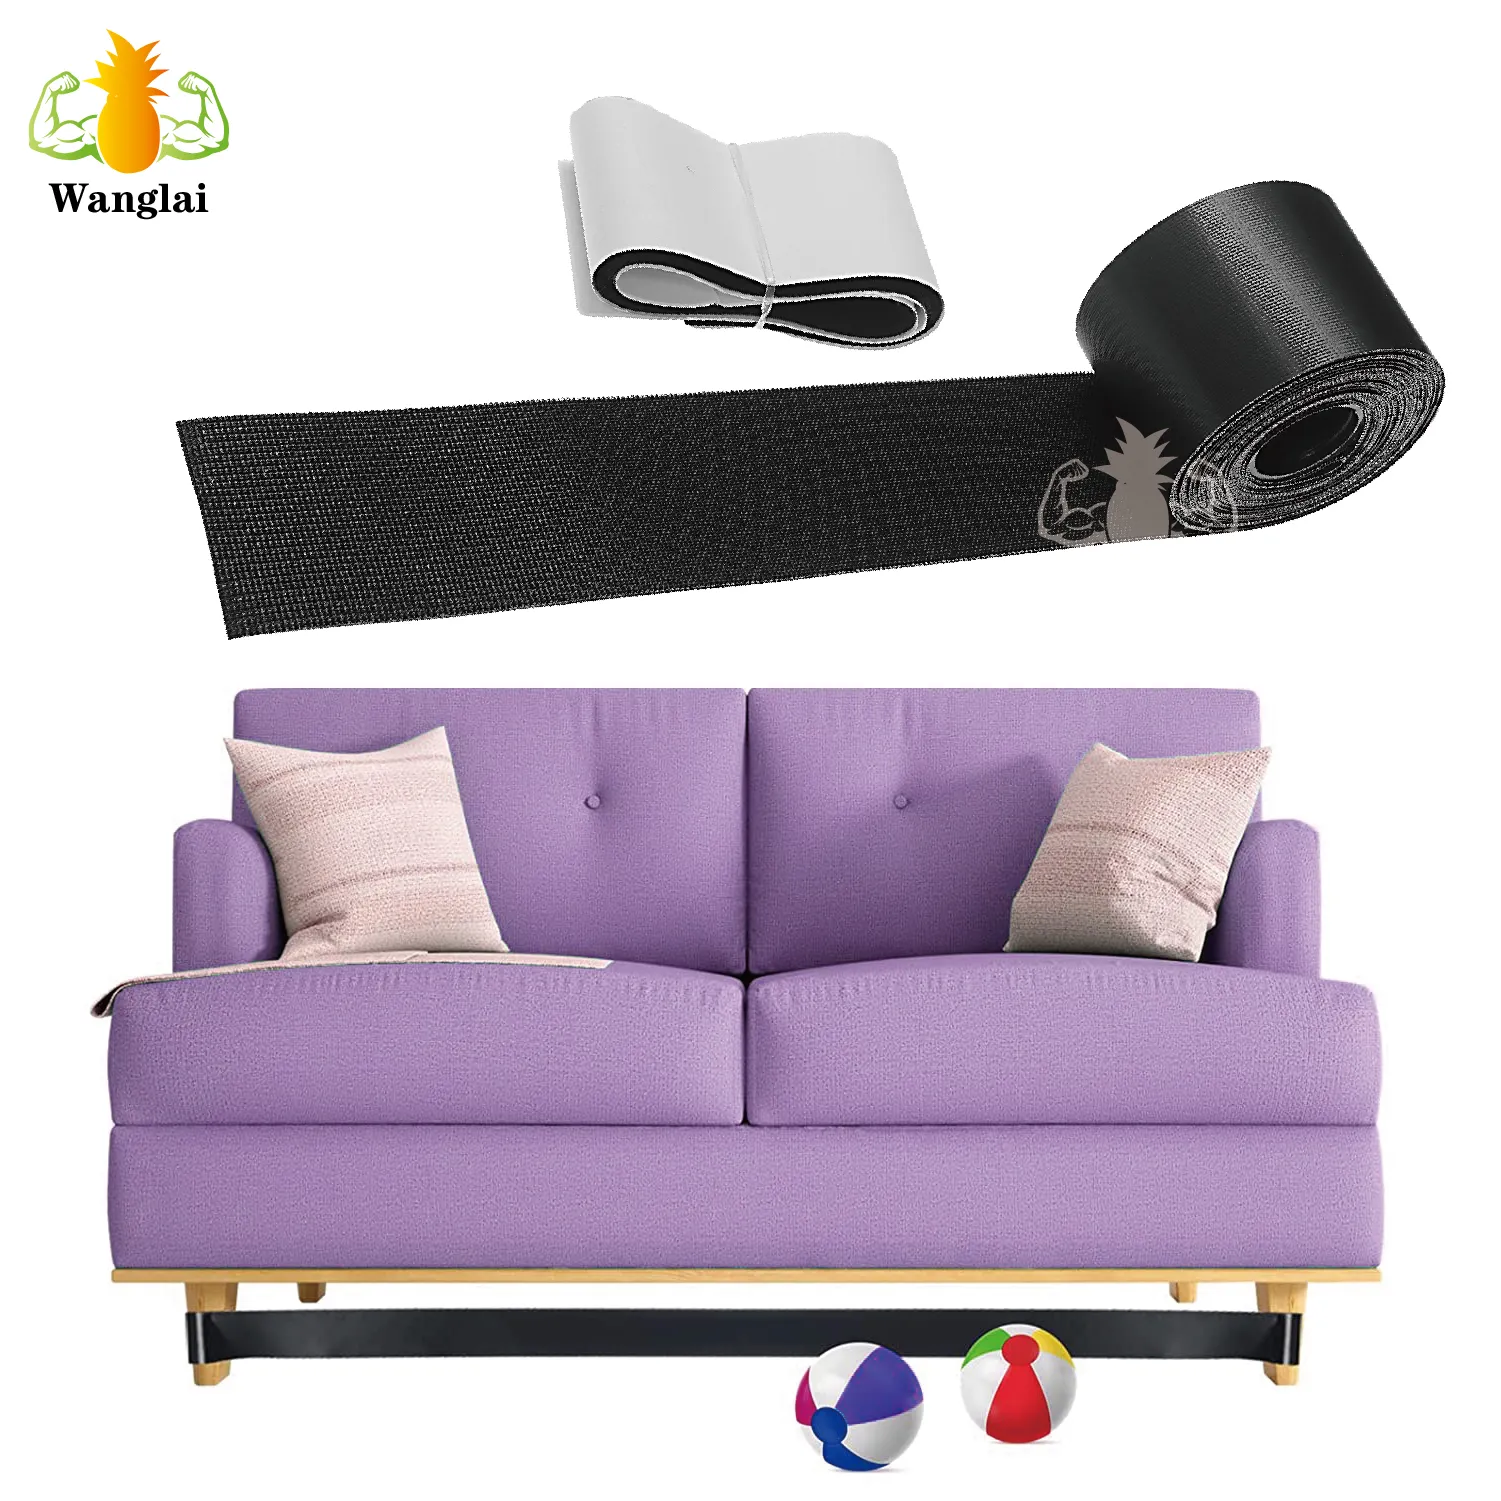 Wide Under Sofa Toy Blocker Adjustable Bumper Under Bed Blocker Adjustable Hook Loop Toy Couch Blocker For Furniture